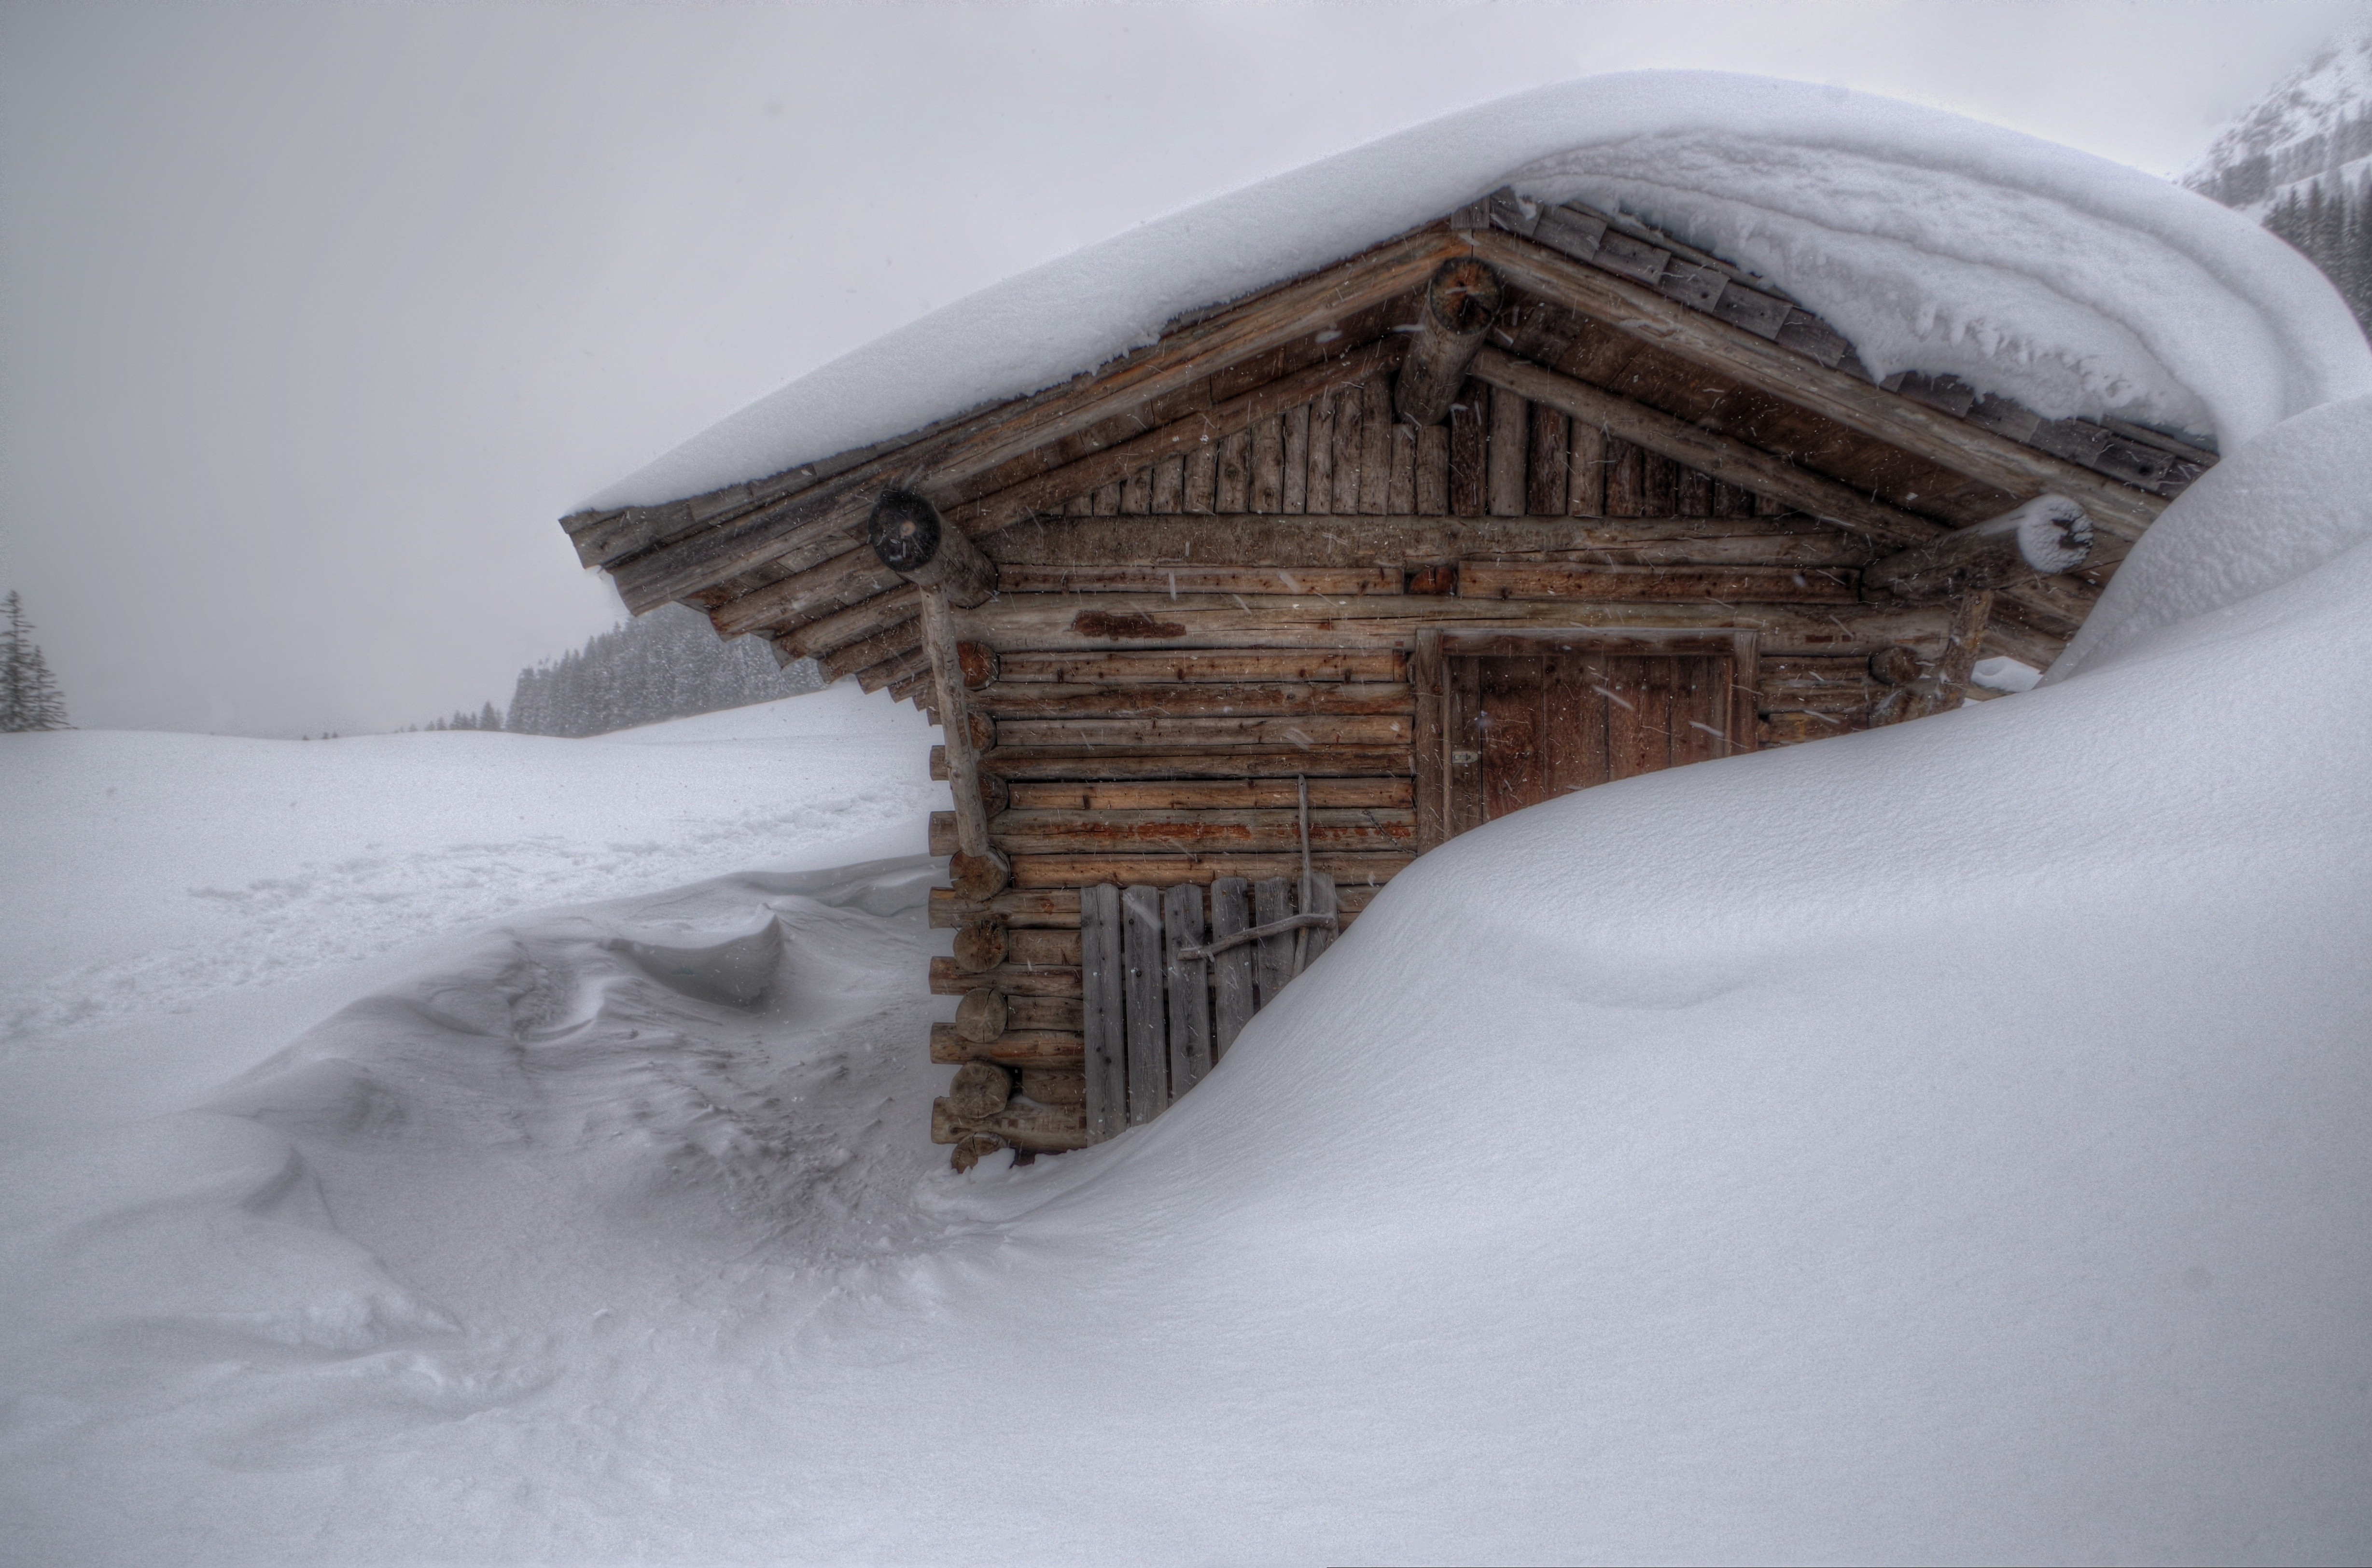 Село занесенное снегом оттаивает по немногу. Деревенский домик зимой. Дом занесло снегом. Занесенная снегом избушка. Деревенский домик под снегом.